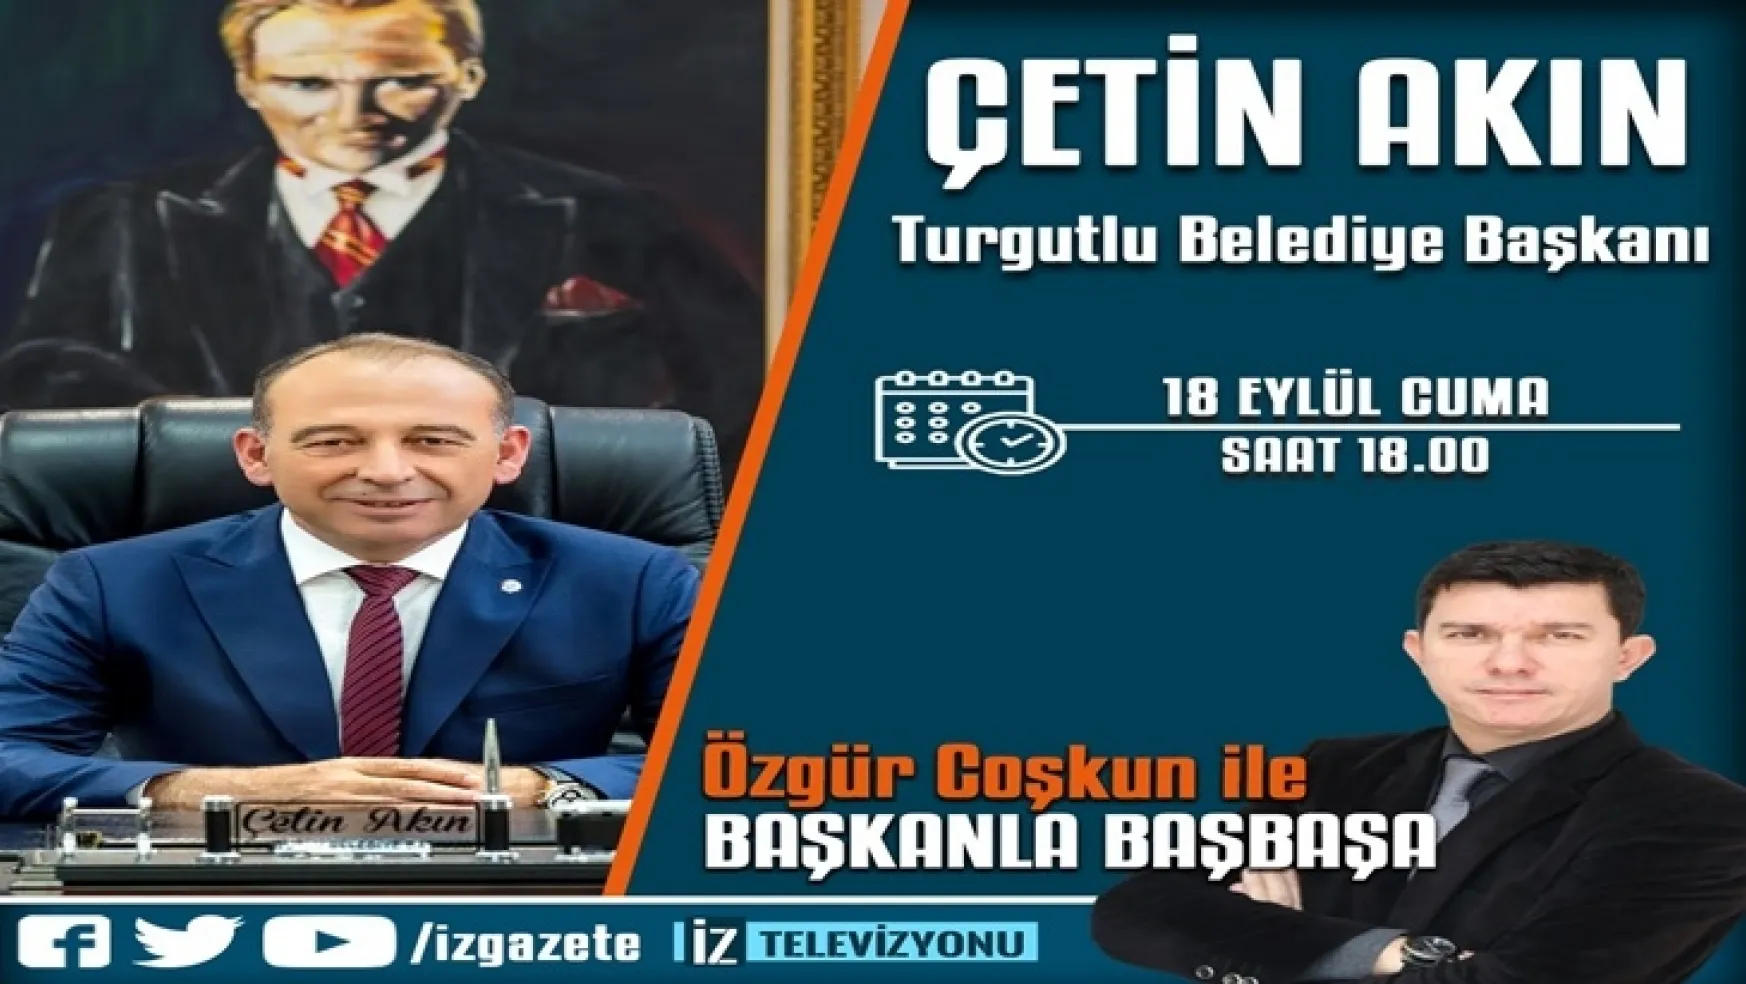 Başkan Çetin Akın İz Televizyonun Canlı Yayın Konuğu Olacak